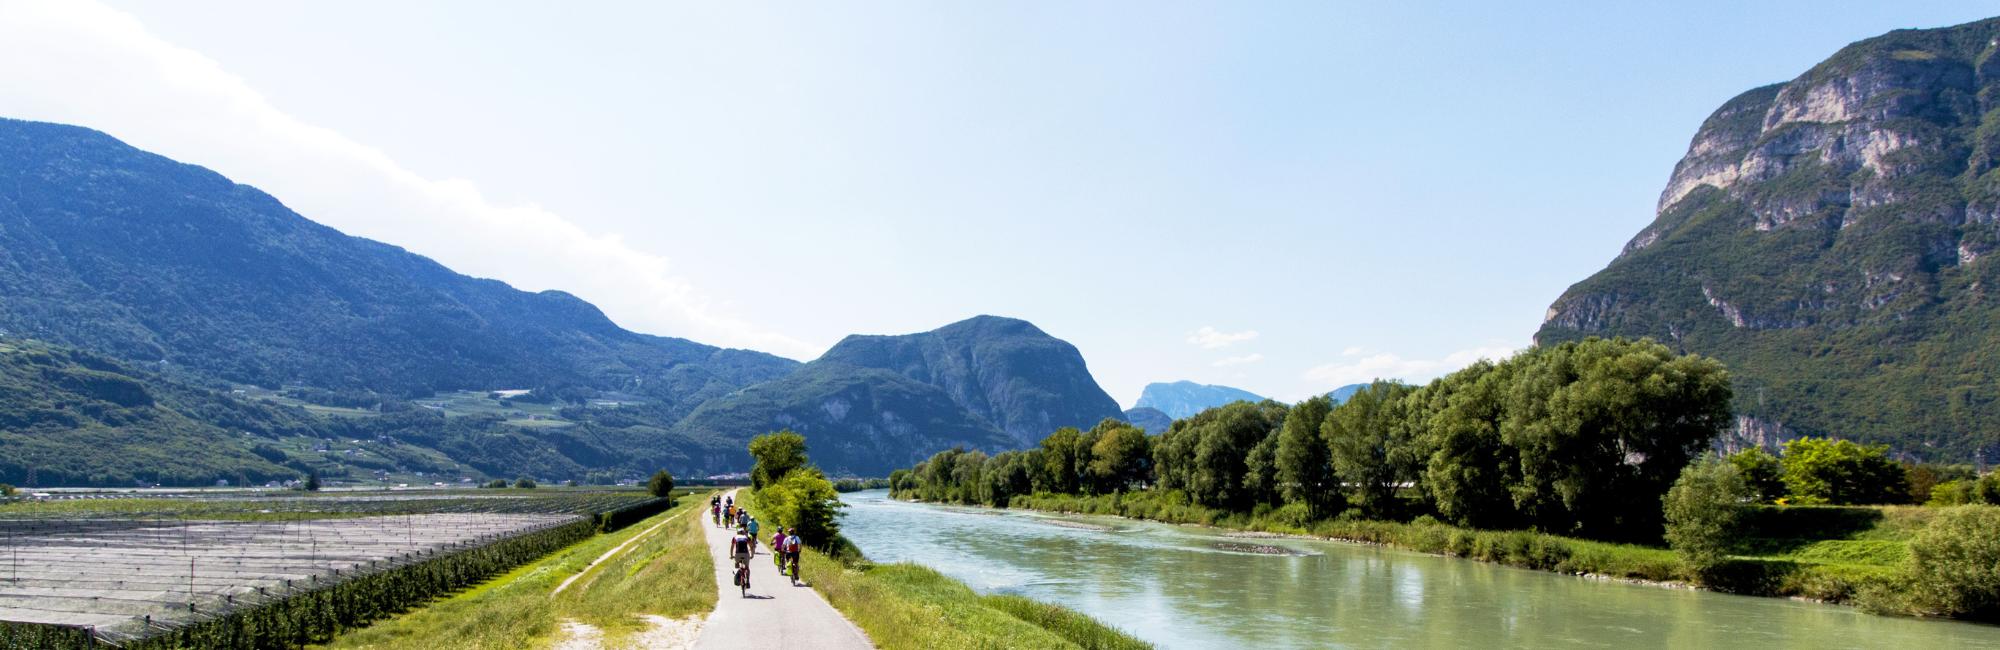 Persone che pedalano in una valle circondata da montagne e un fiume